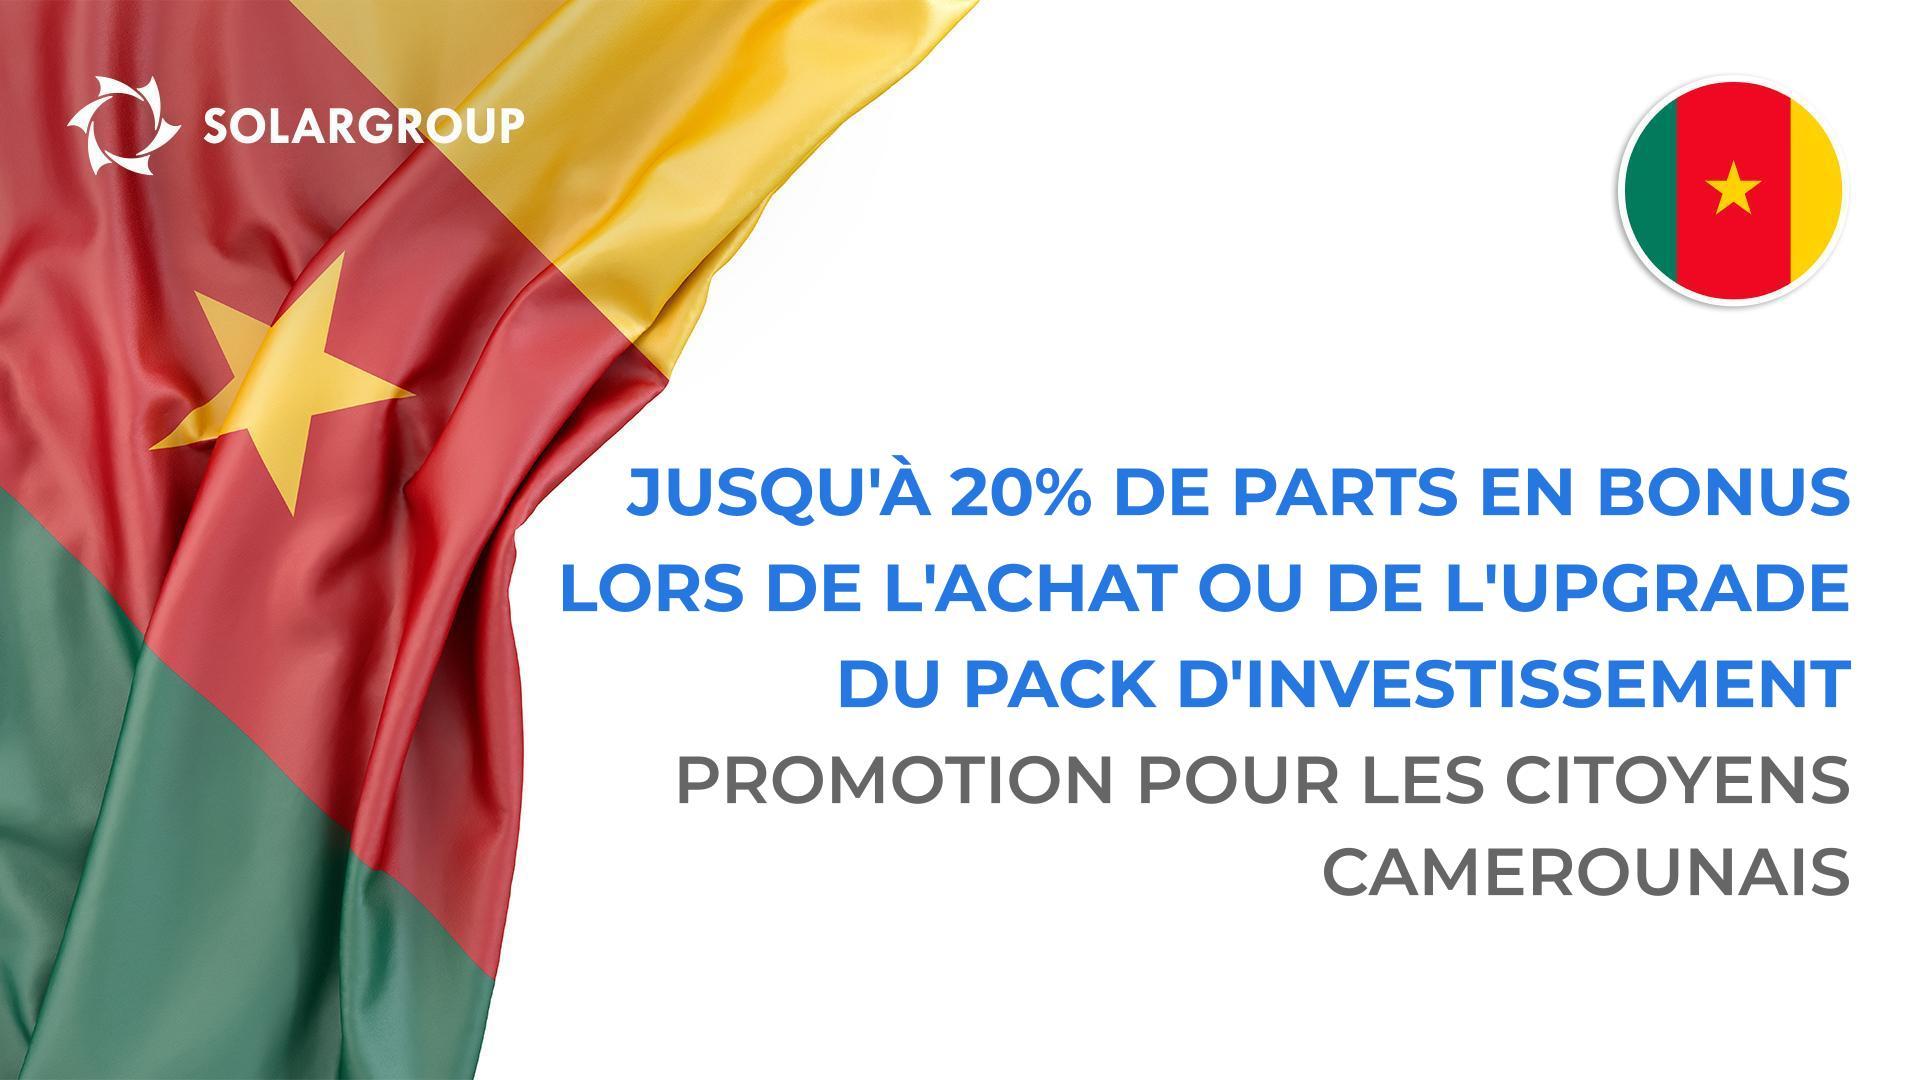 "Bonus régional" pour les citoyens camerounais : jusqu'à 20% de parts en bonus lors de l'achat ou de l'upgrade du pack d'investissement